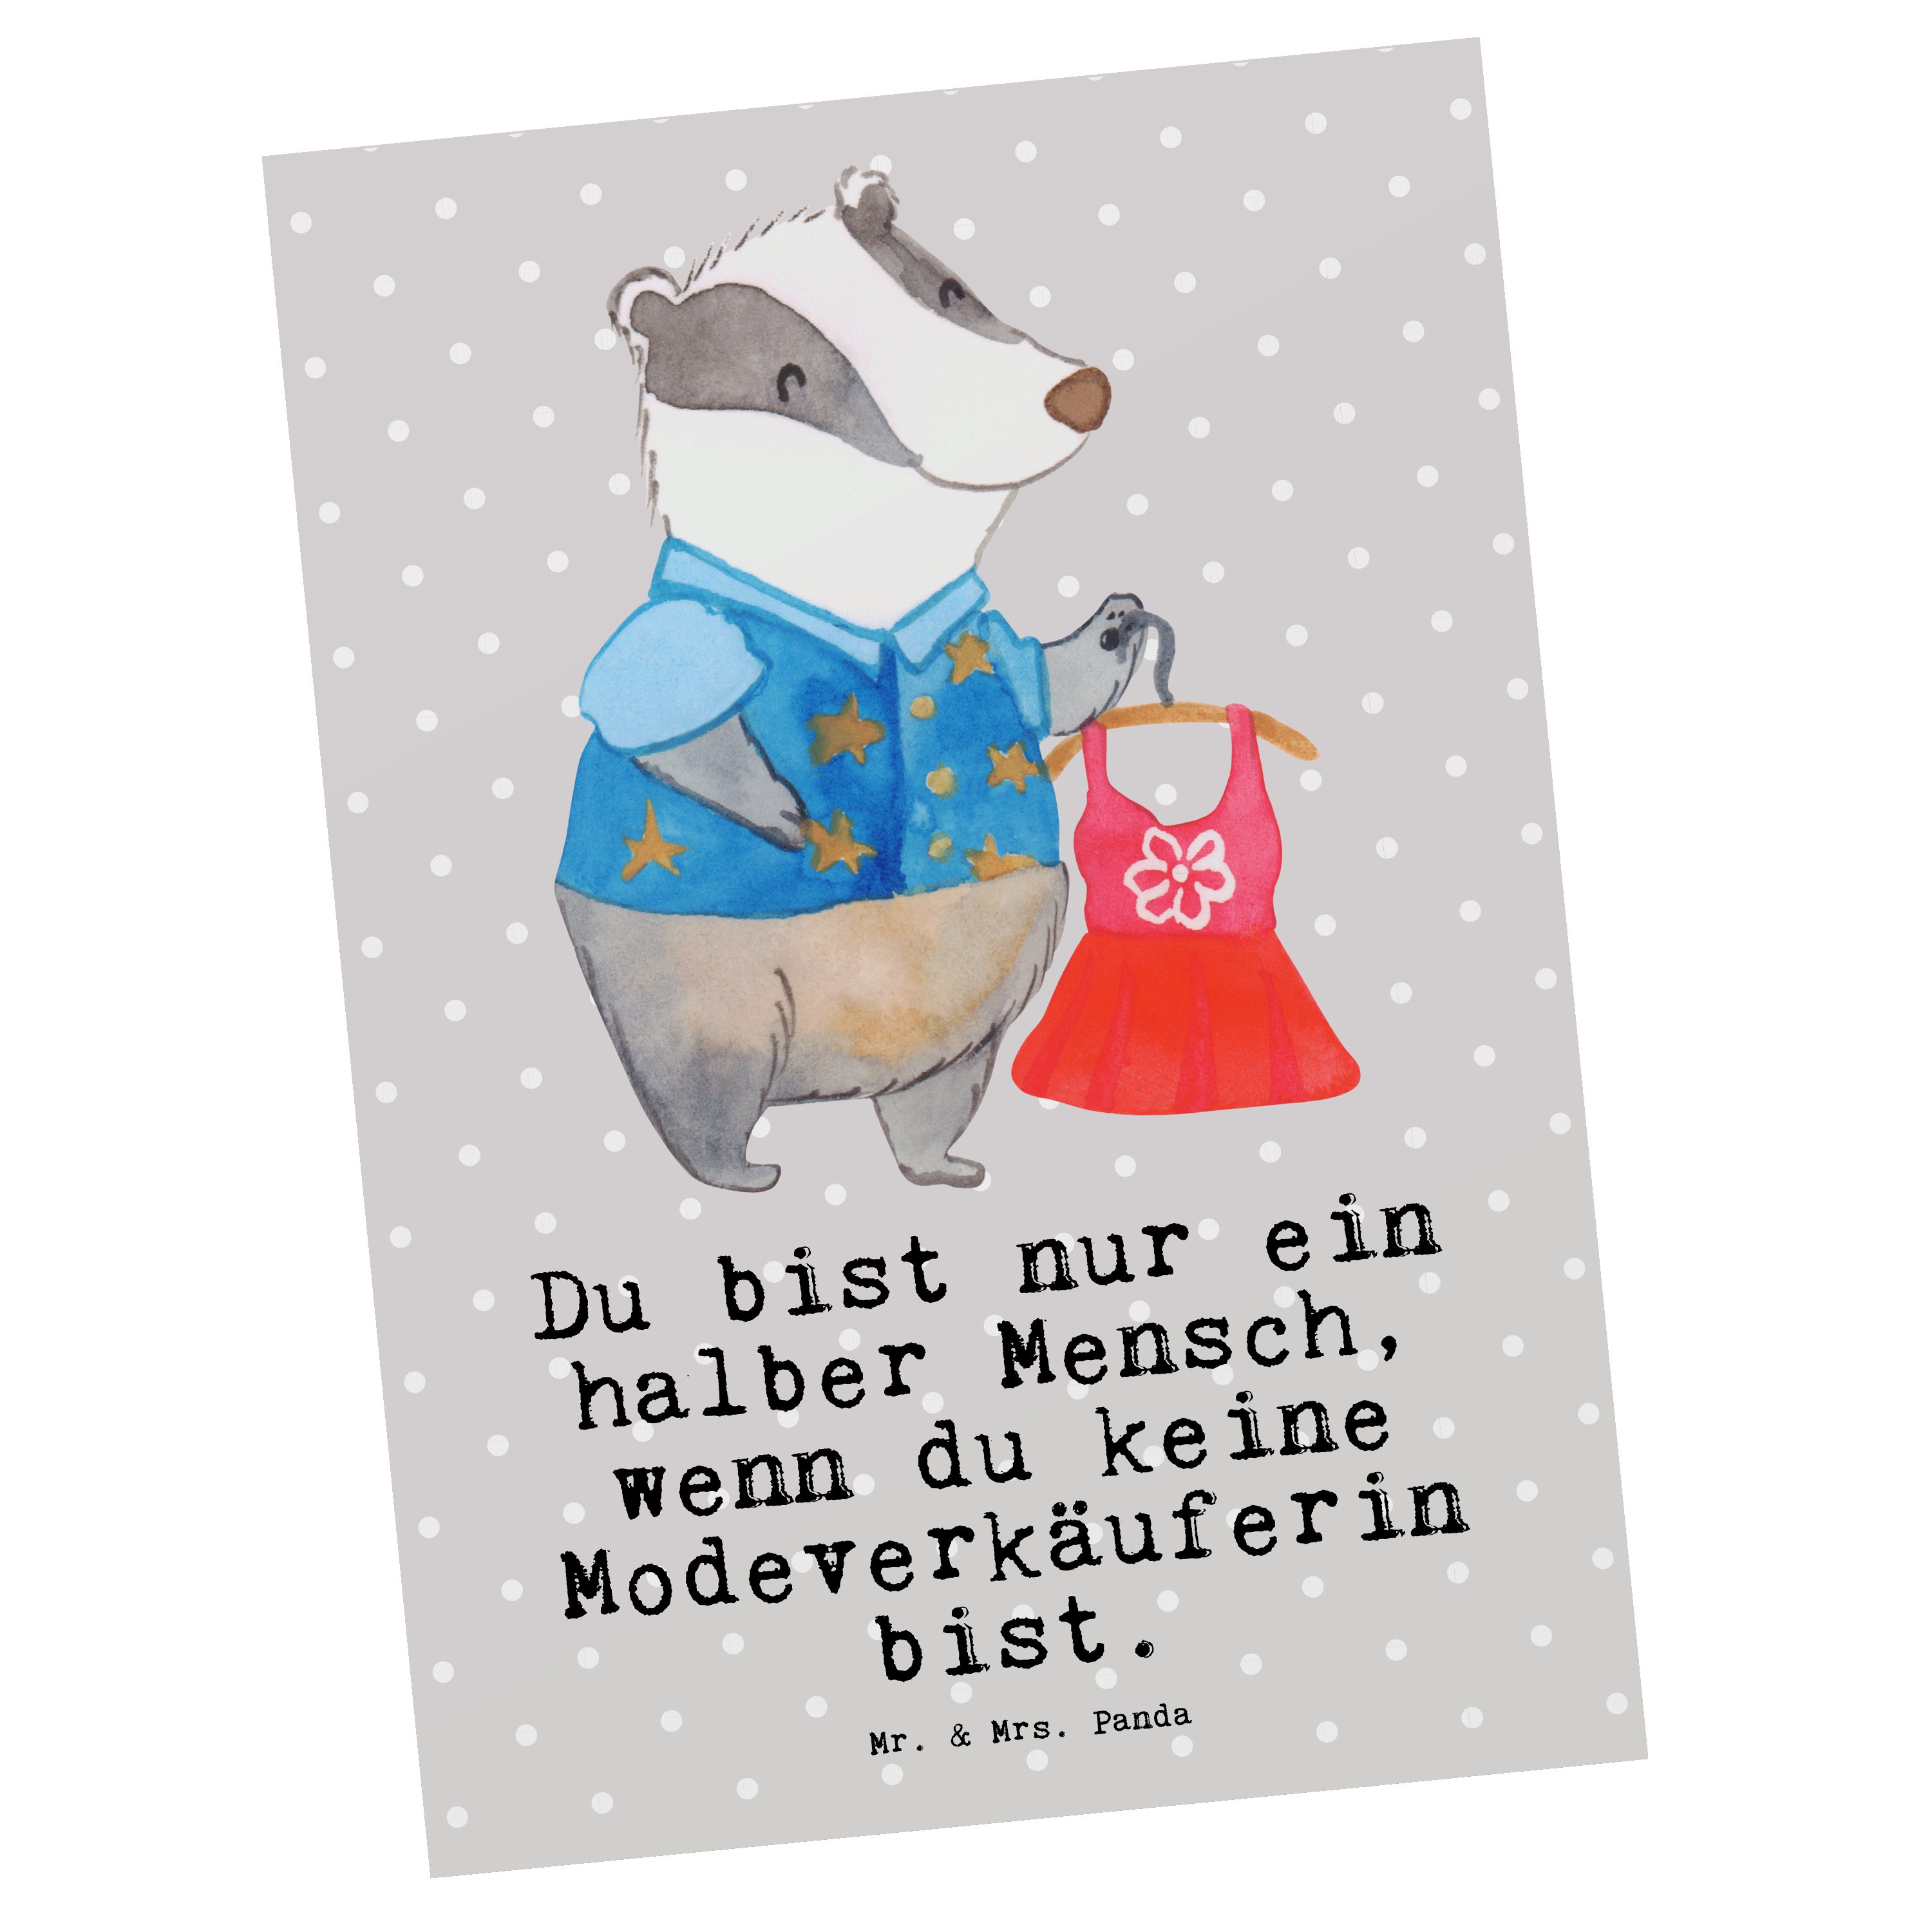 Mr. & Mrs. Panda Postkarte Modeverkäuferin mit Herz - Grau Pastell - Geschenk, Geschenkkarte, Da